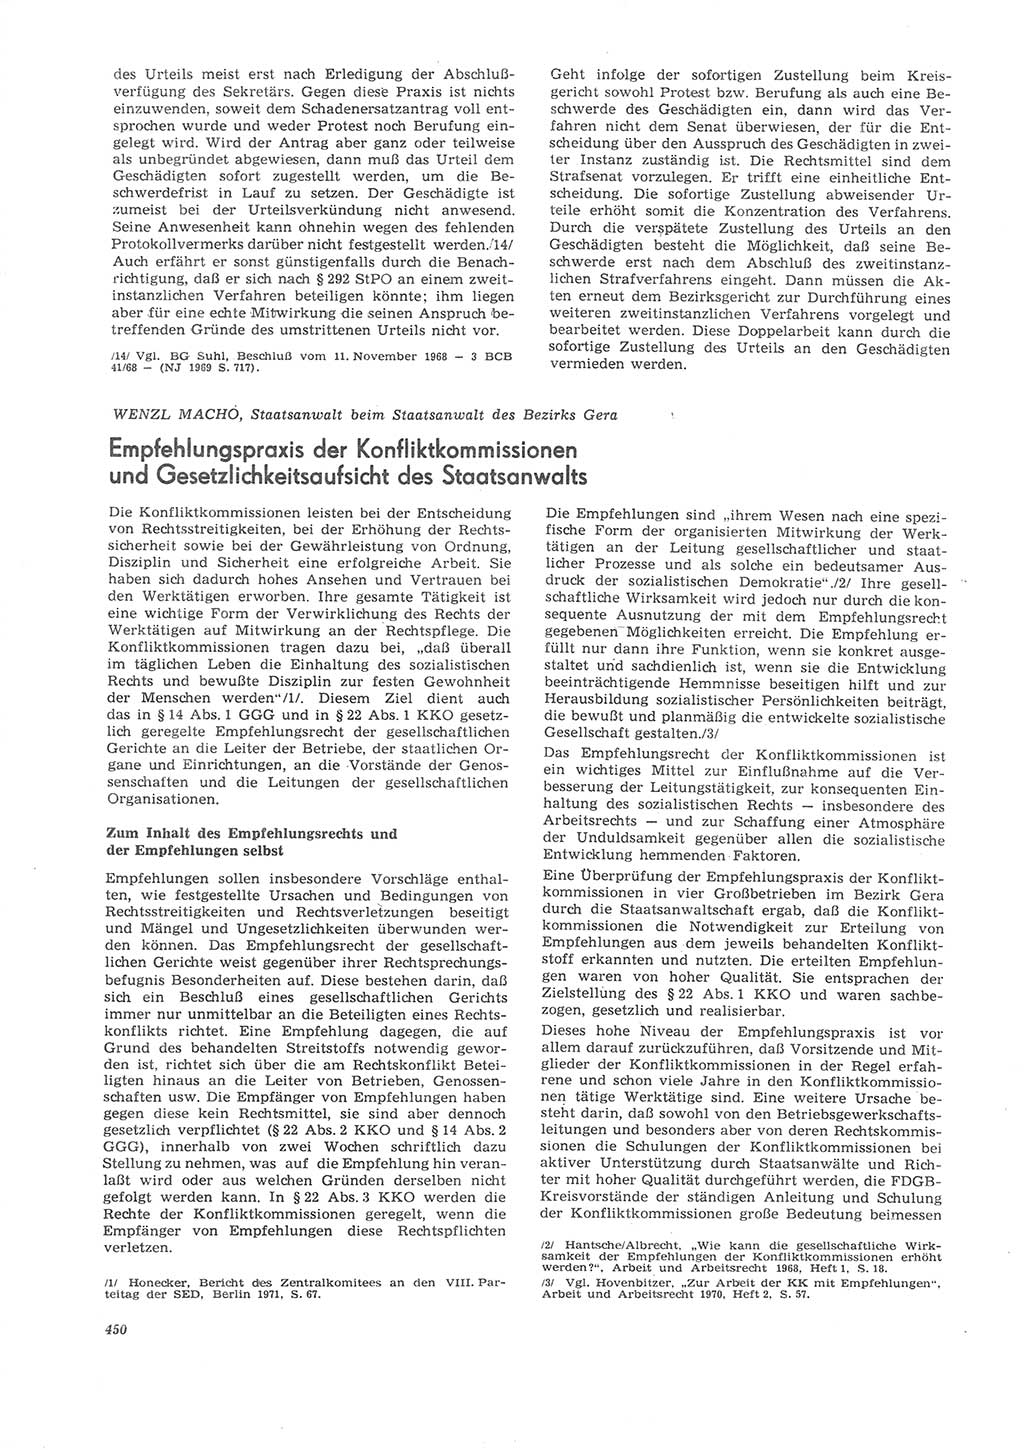 Neue Justiz (NJ), Zeitschrift für Recht und Rechtswissenschaft [Deutsche Demokratische Republik (DDR)], 26. Jahrgang 1972, Seite 450 (NJ DDR 1972, S. 450)